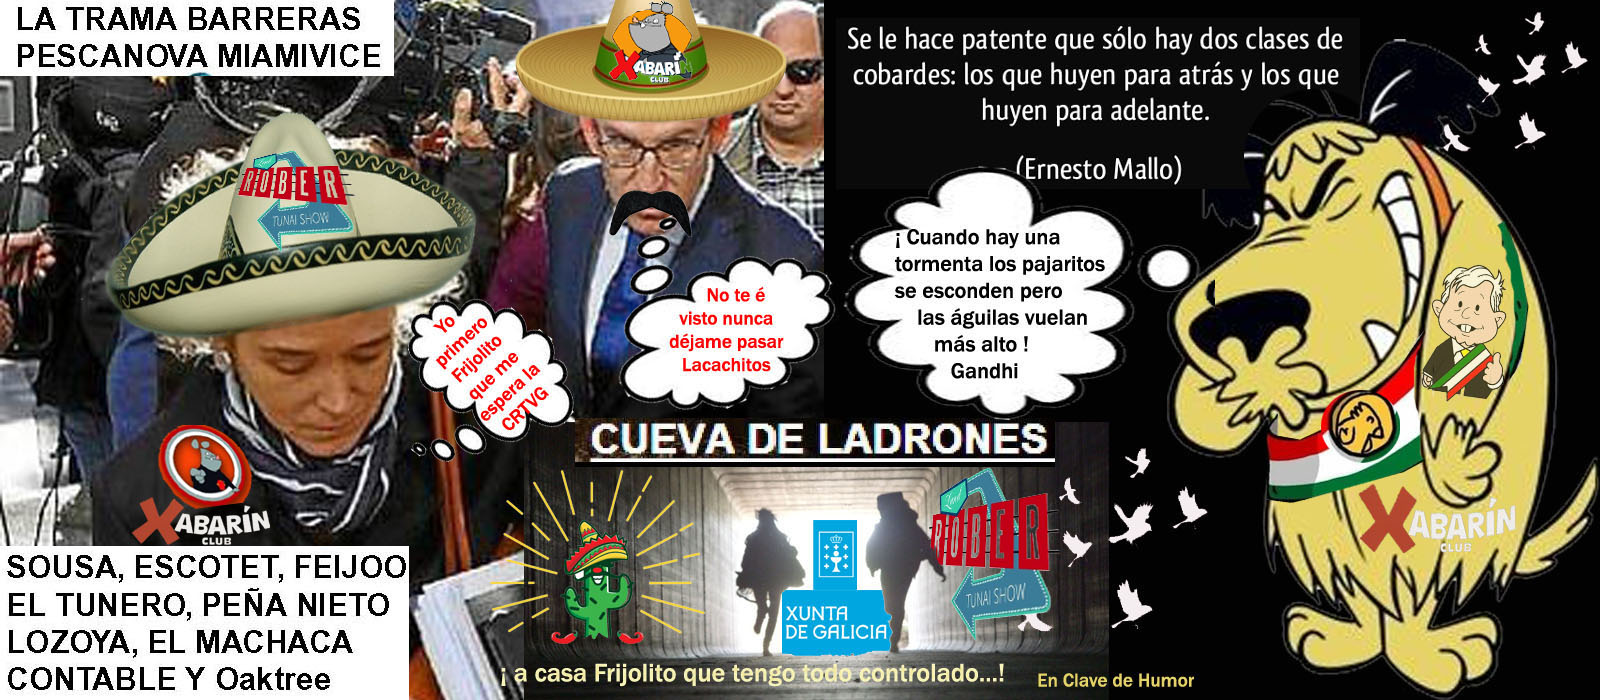 Feijóo y María del Mar Sánchez Sierra le metieron un &amp;quot; cañonazo &amp;quot; al  Gobierno de México que, el Presidente Obrador públicamente les dice que no  vuelvan allí que ya no se